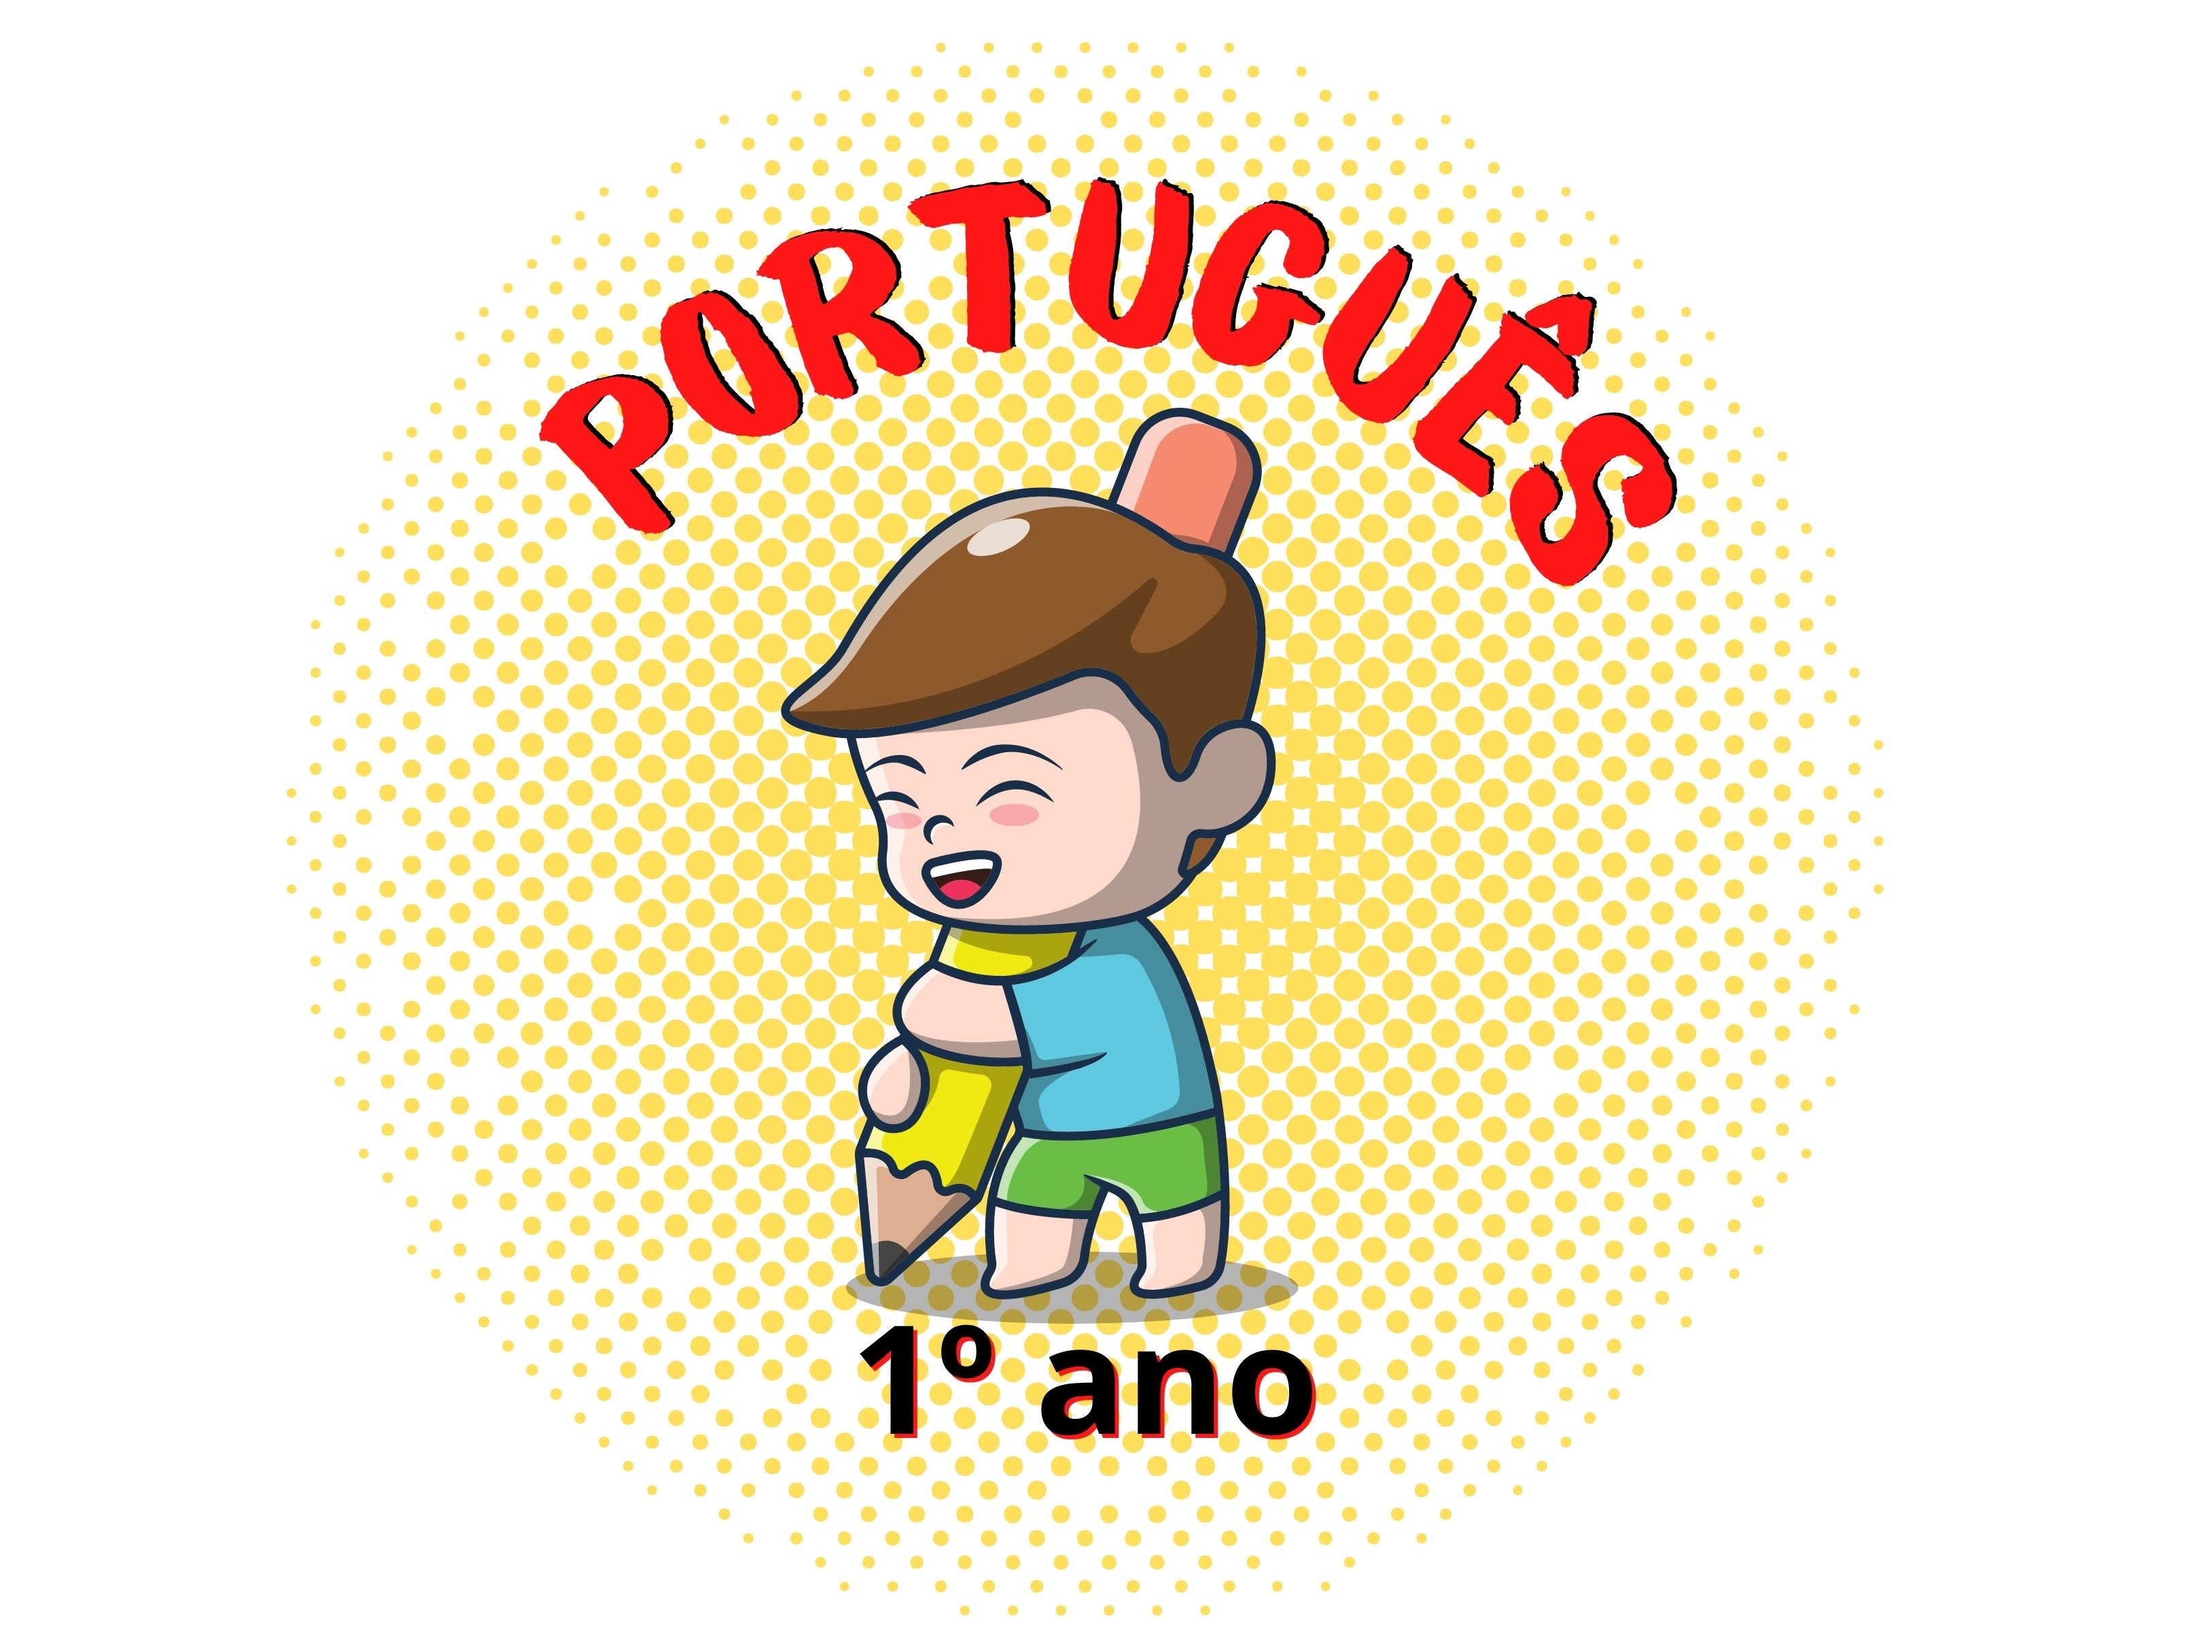 01 Lingua Portuguesa, PDF, Interpretação linguística